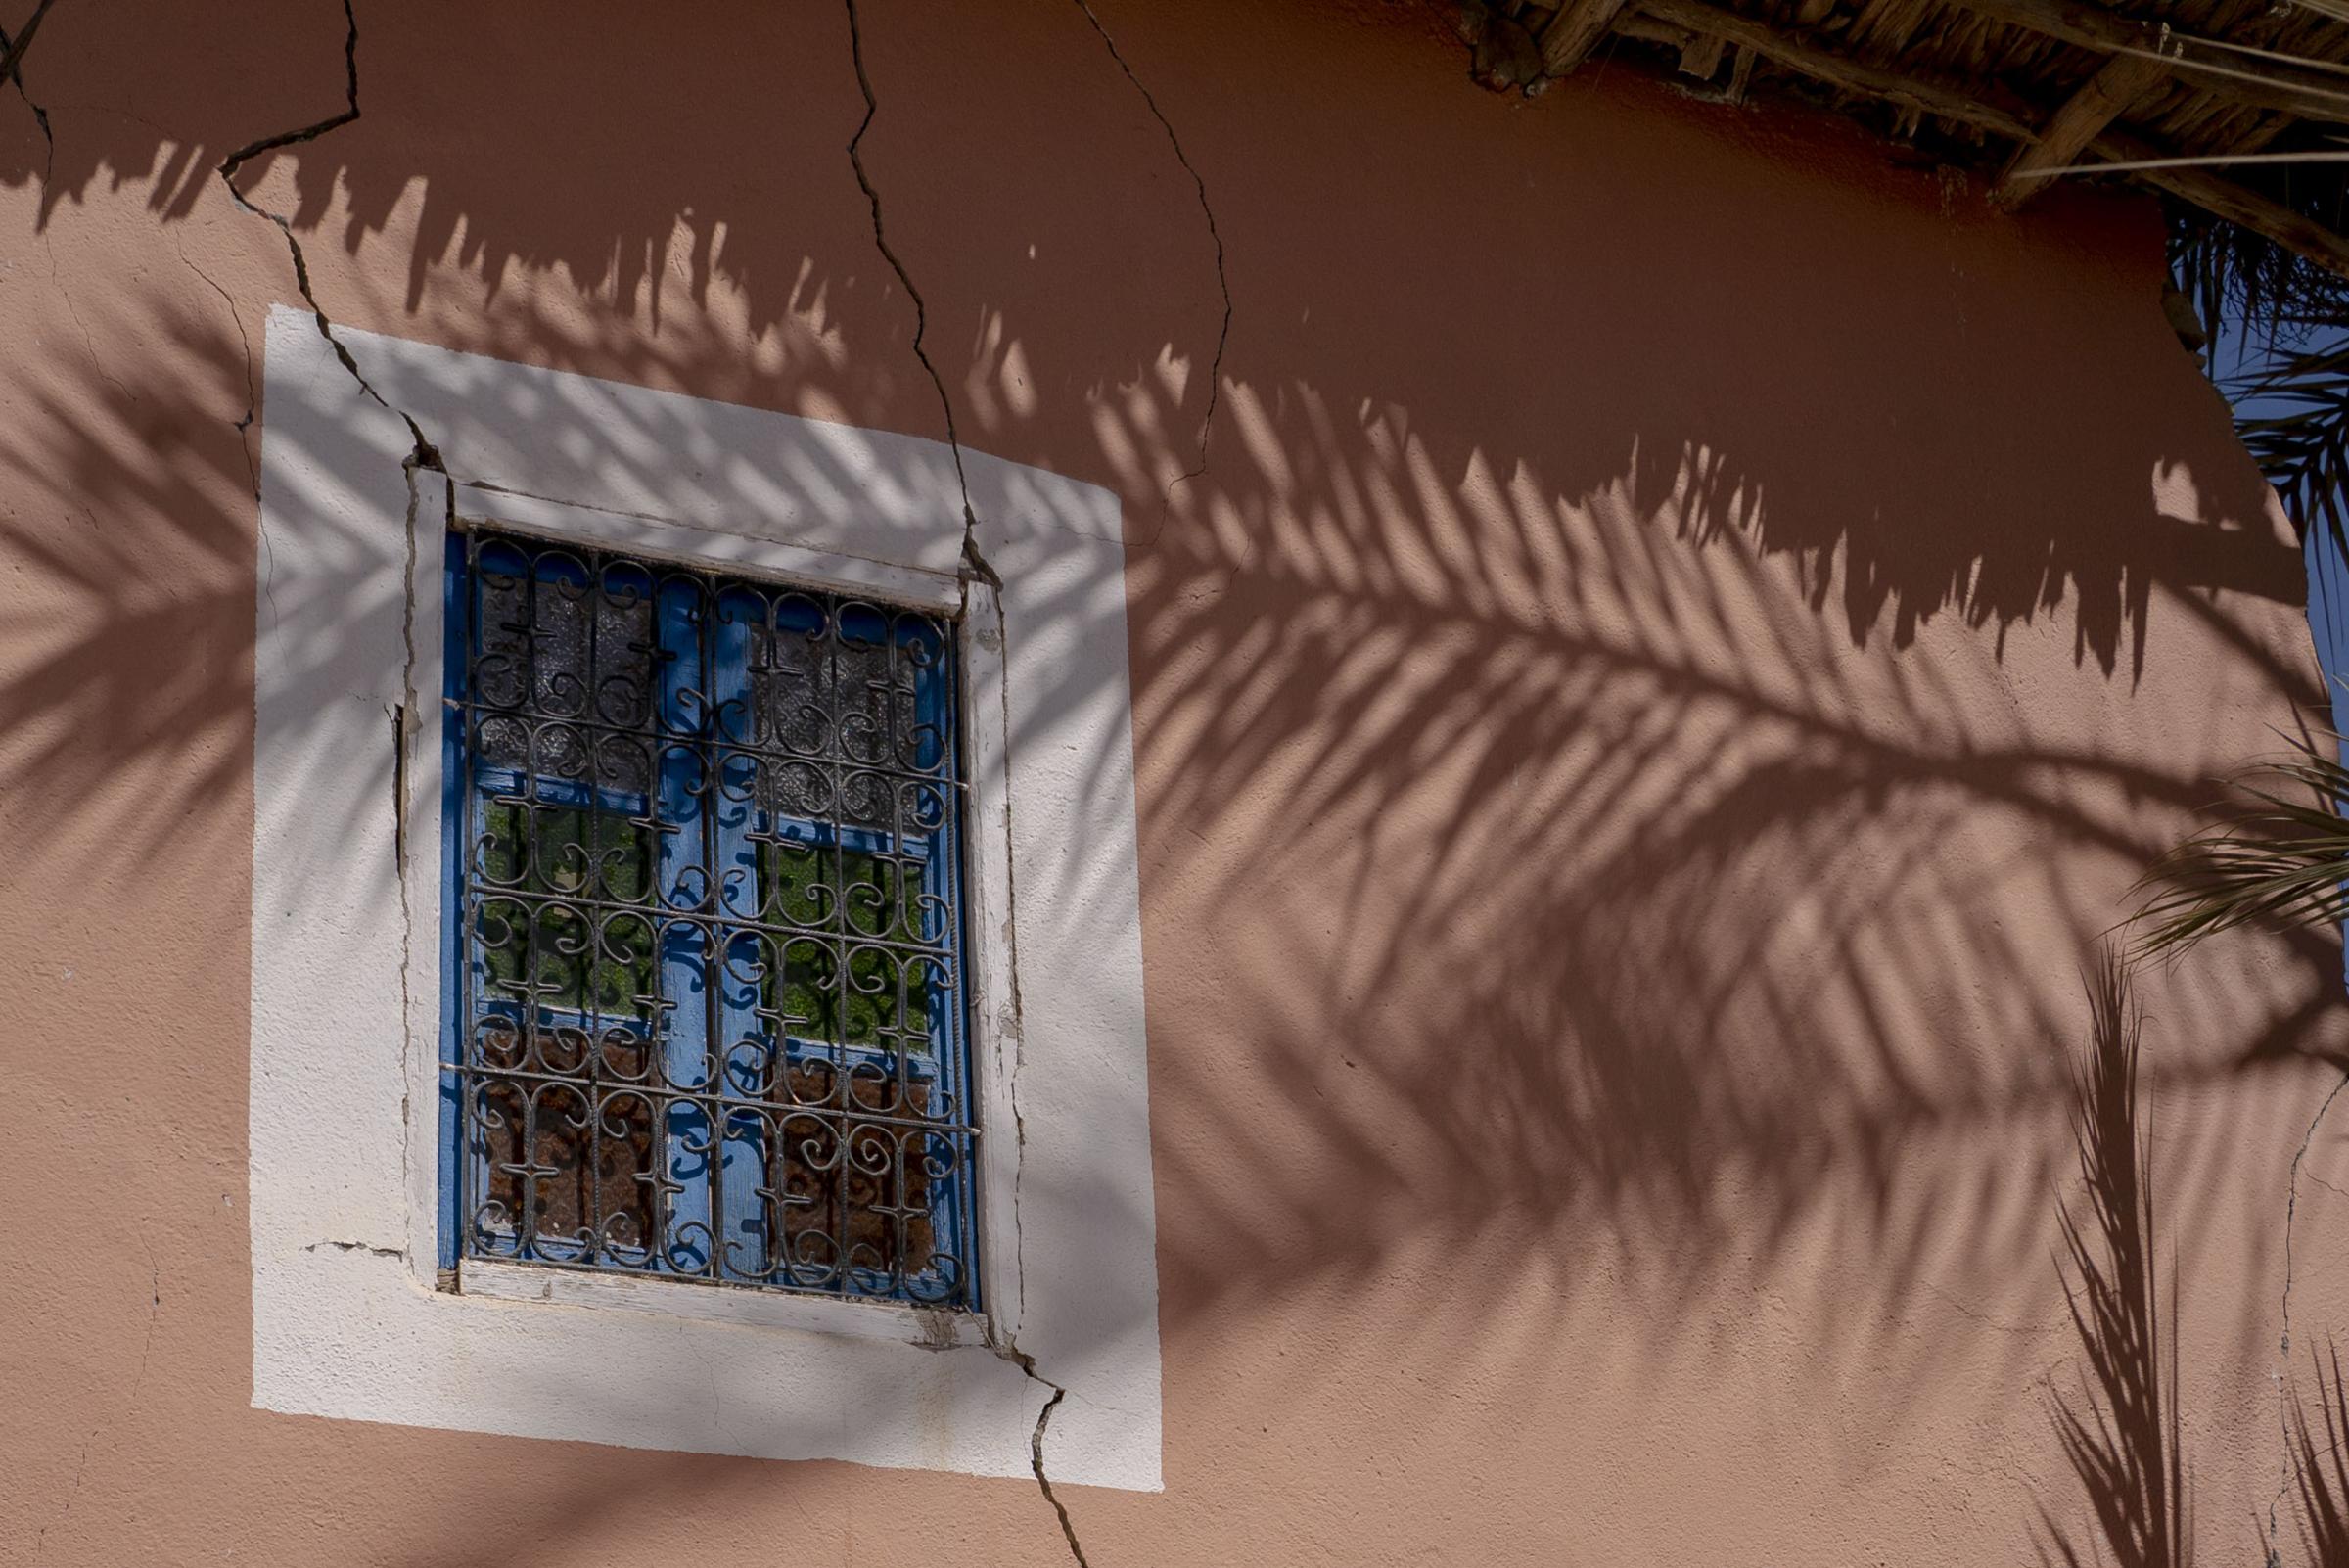 Maroc - the shock - La façade de cette maison semble solide. Mais...